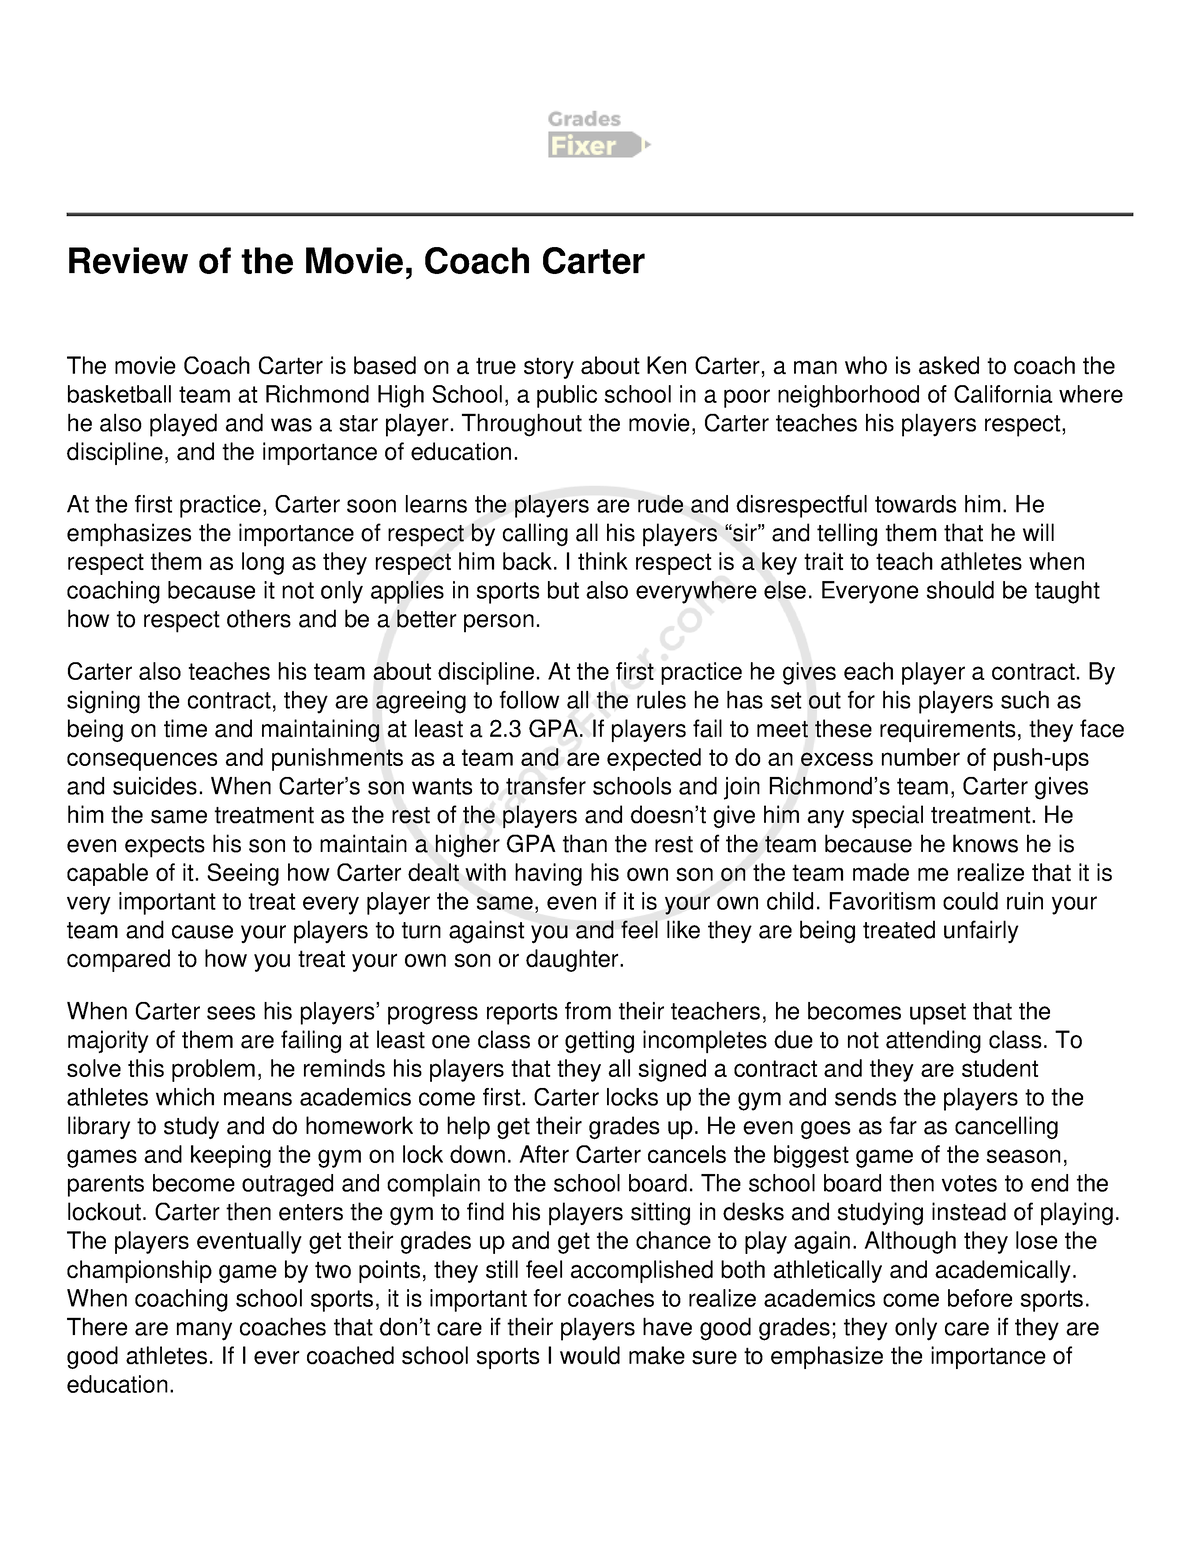 Coach Carter : Movie Review